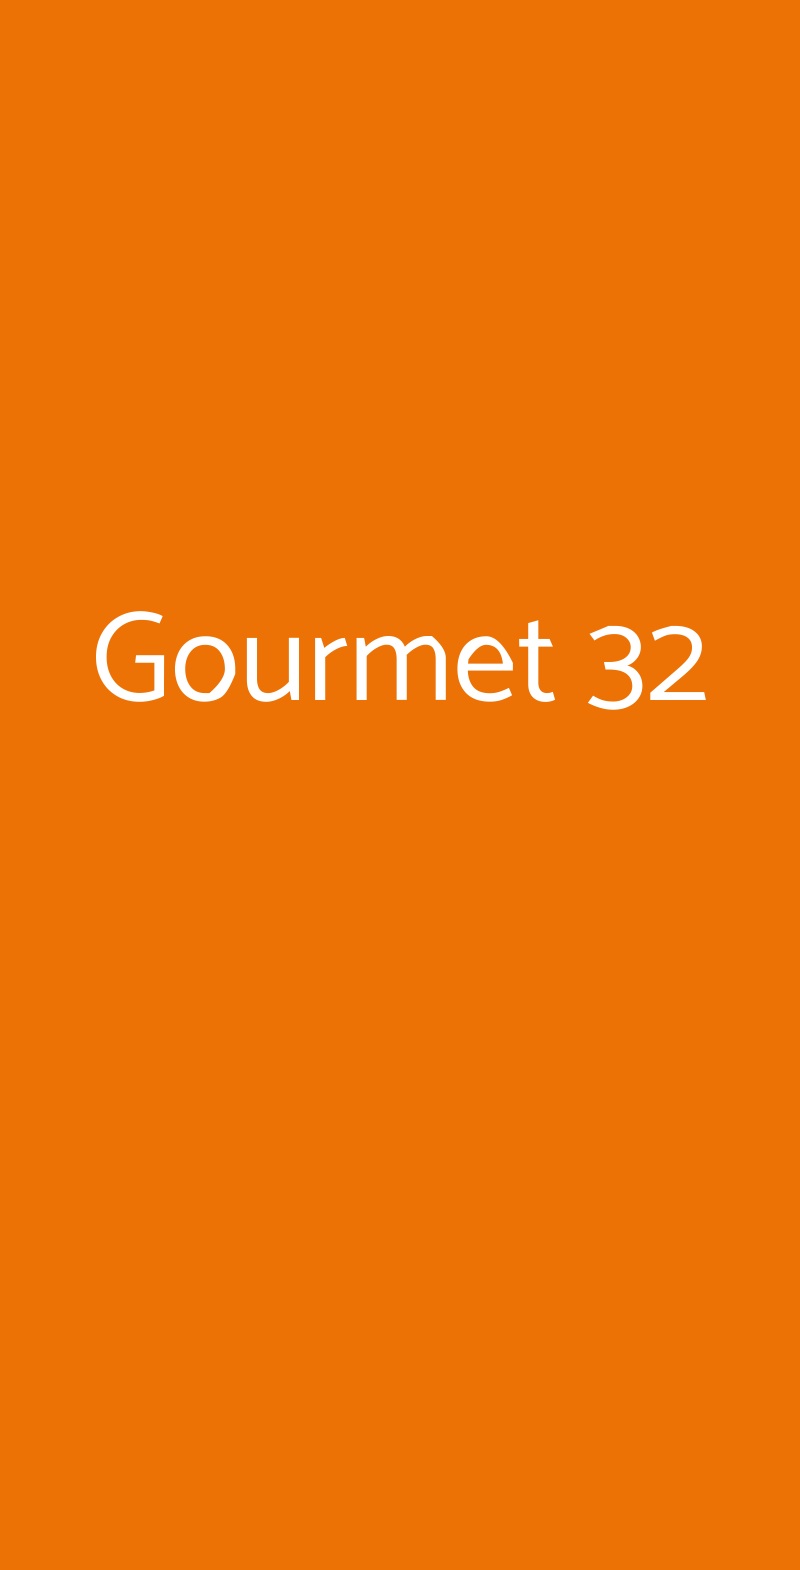 Gourmet 32 Taormina menù 1 pagina